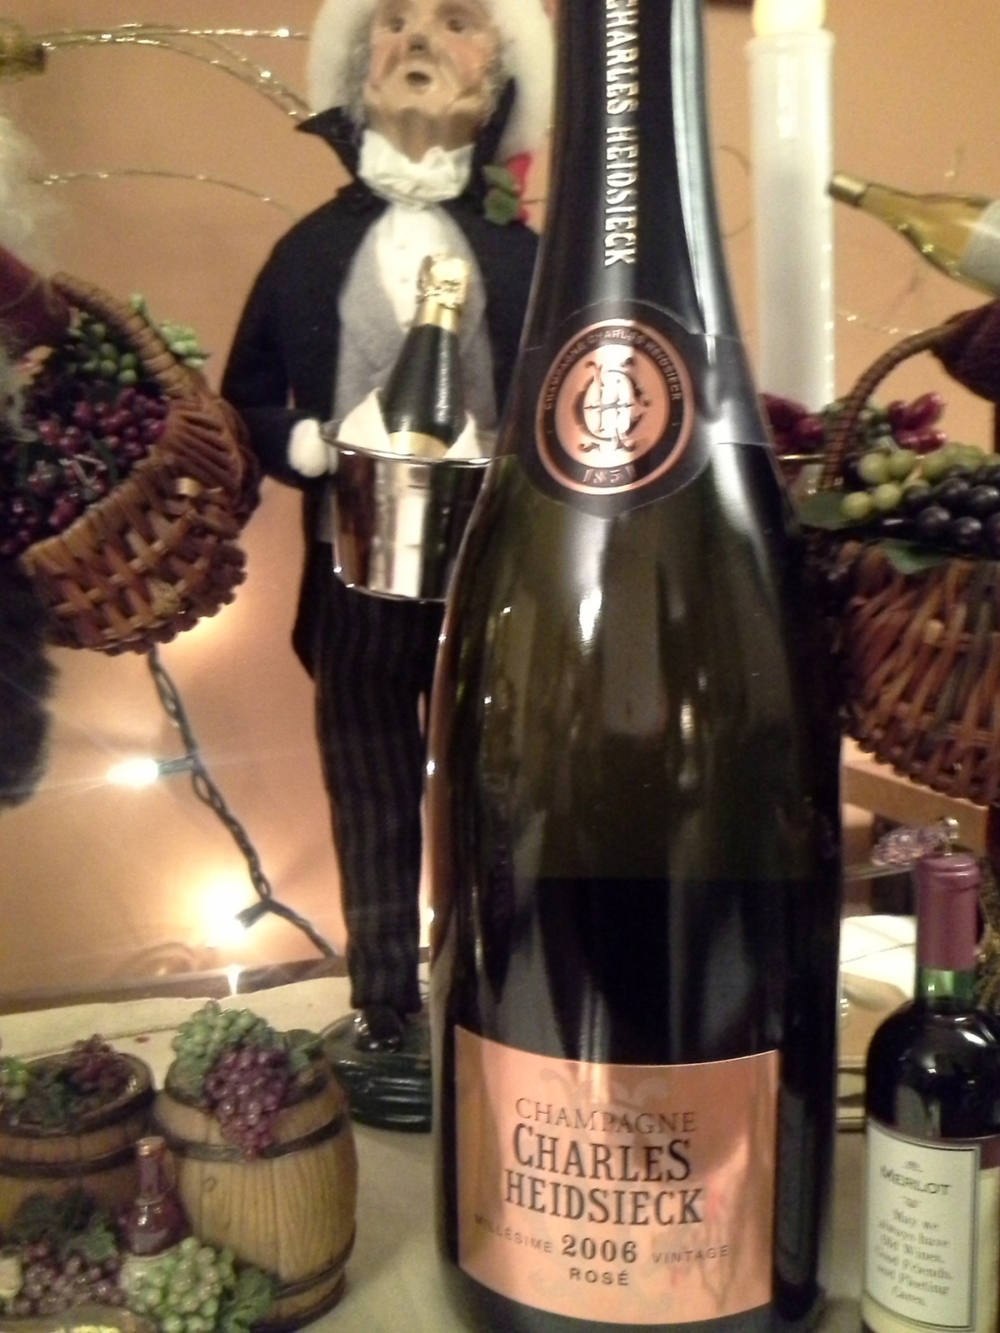 Charles Heidsieck Champagne RosMillsime Vintage 2006, $149.